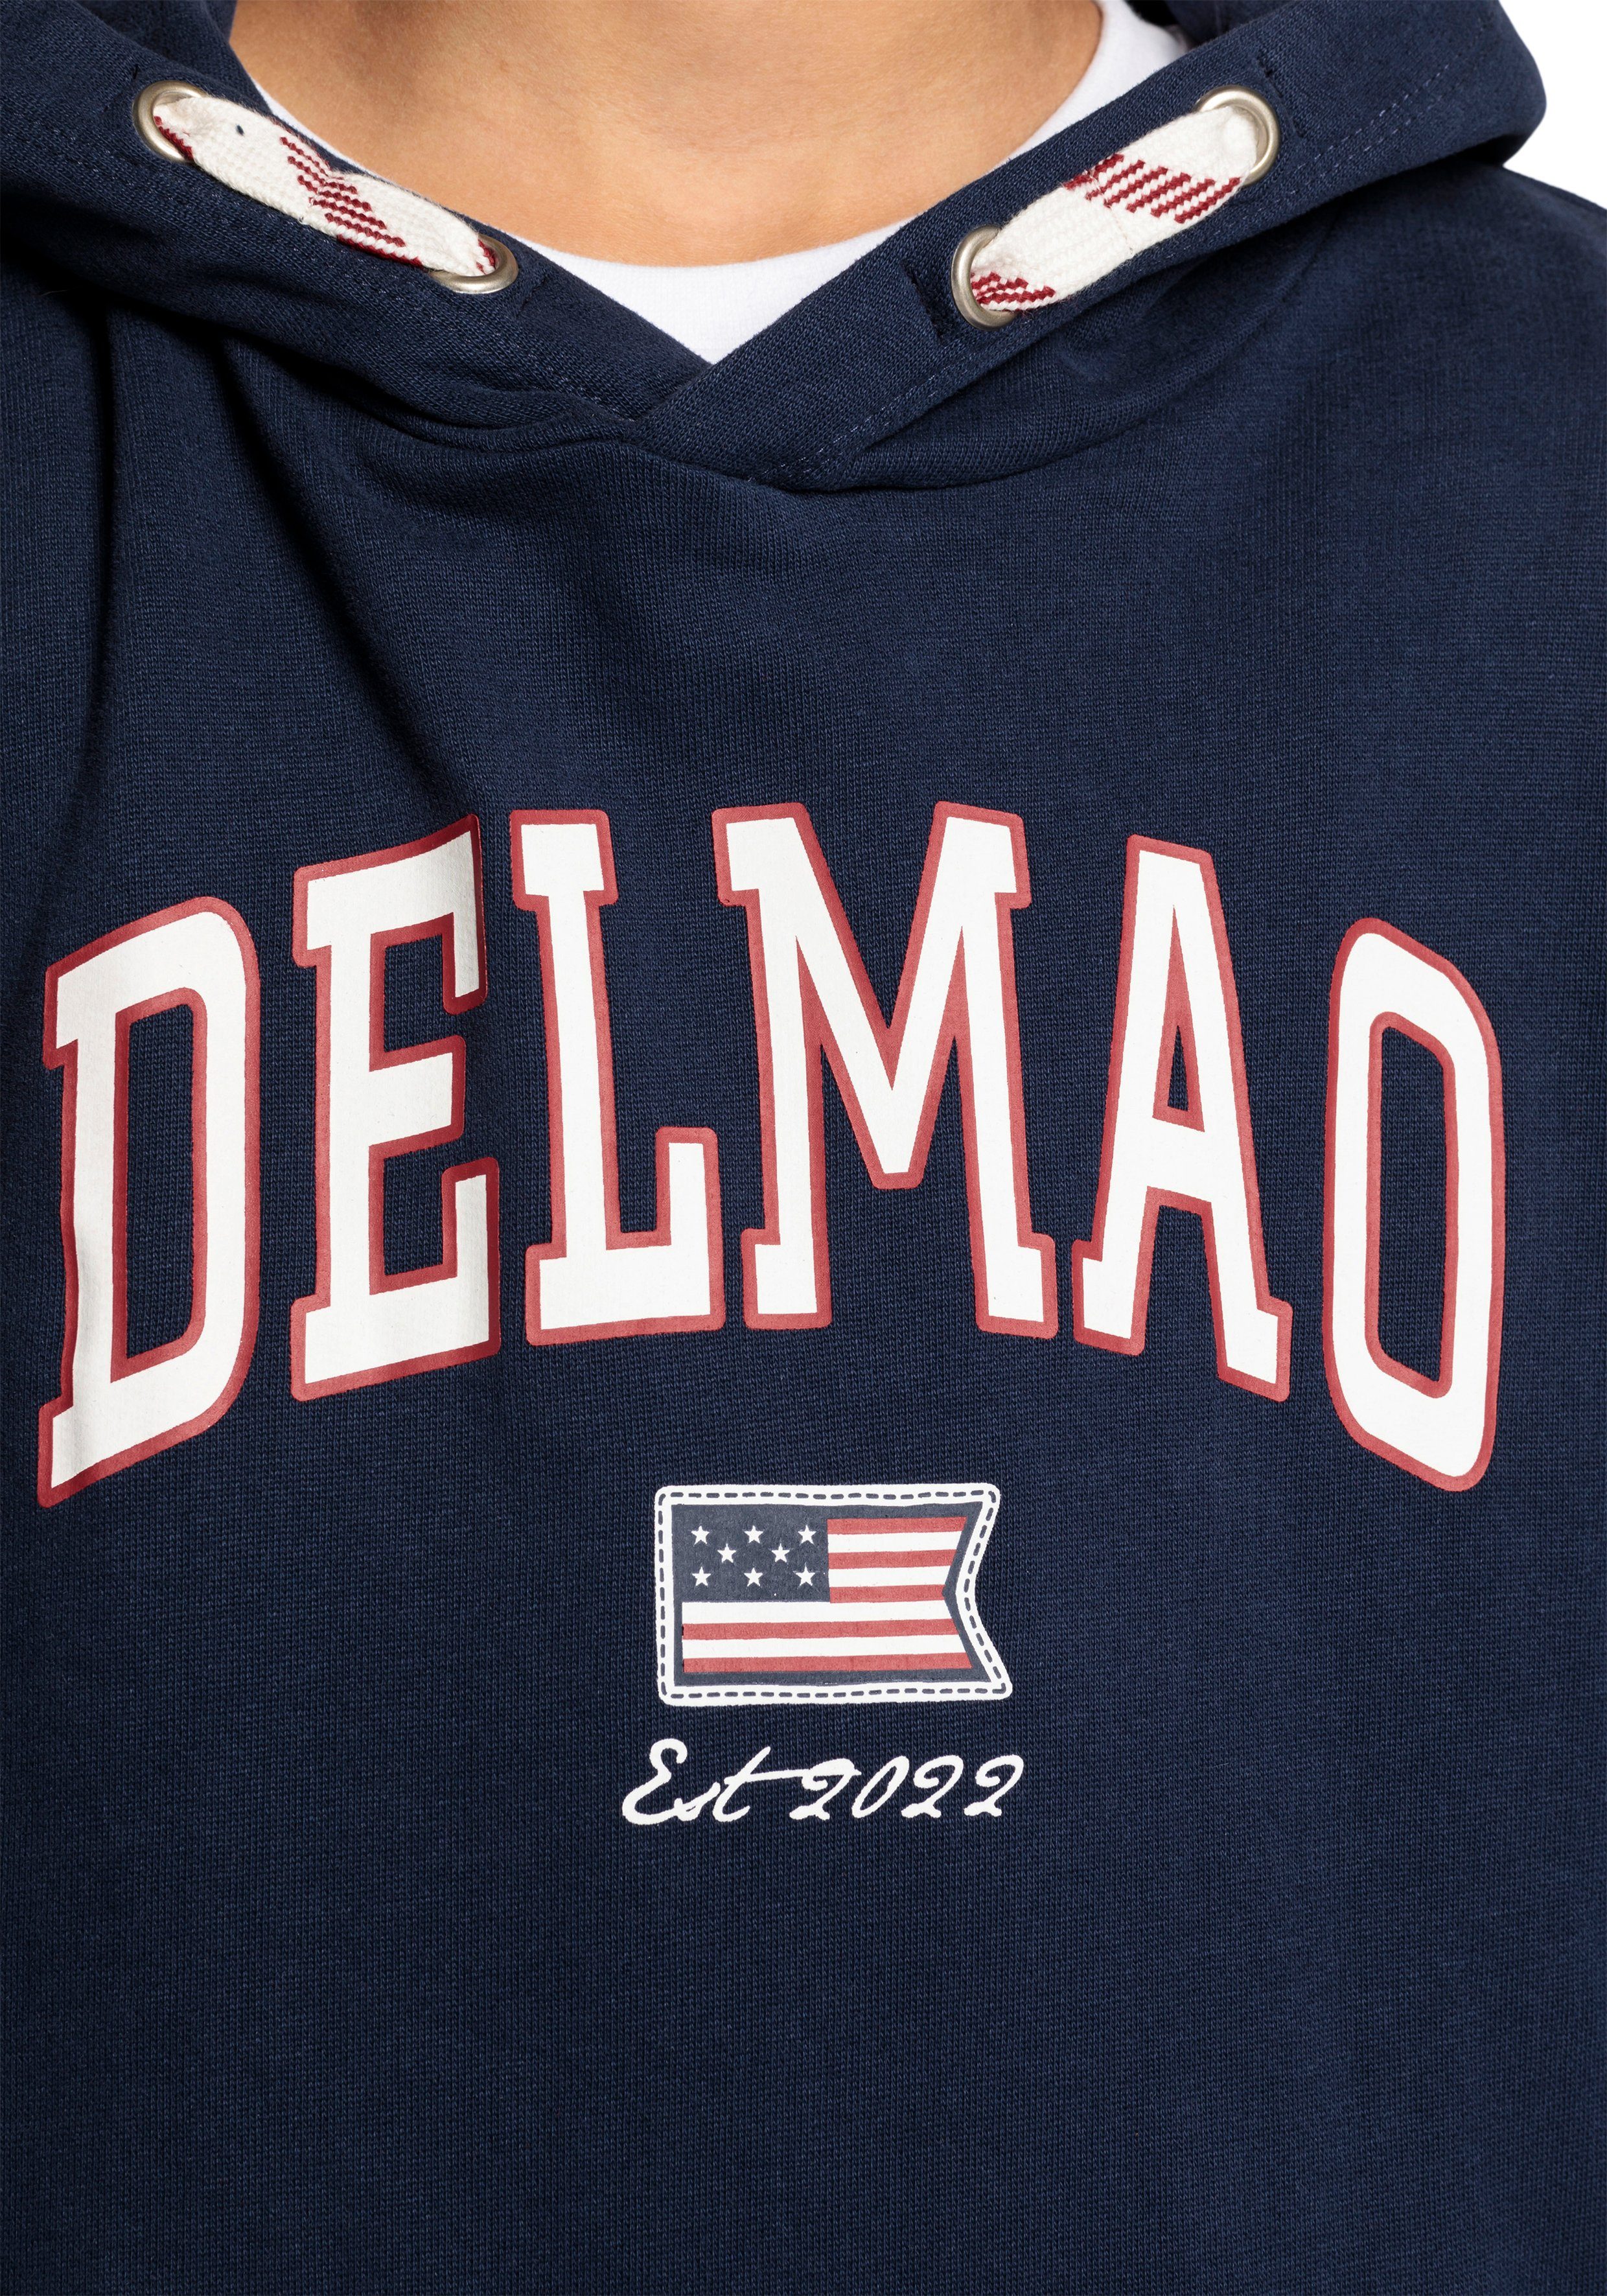 DELMAO Kapuzensweatshirt für Jungen, Logo-Sweathirt der Delmao Marke neuen